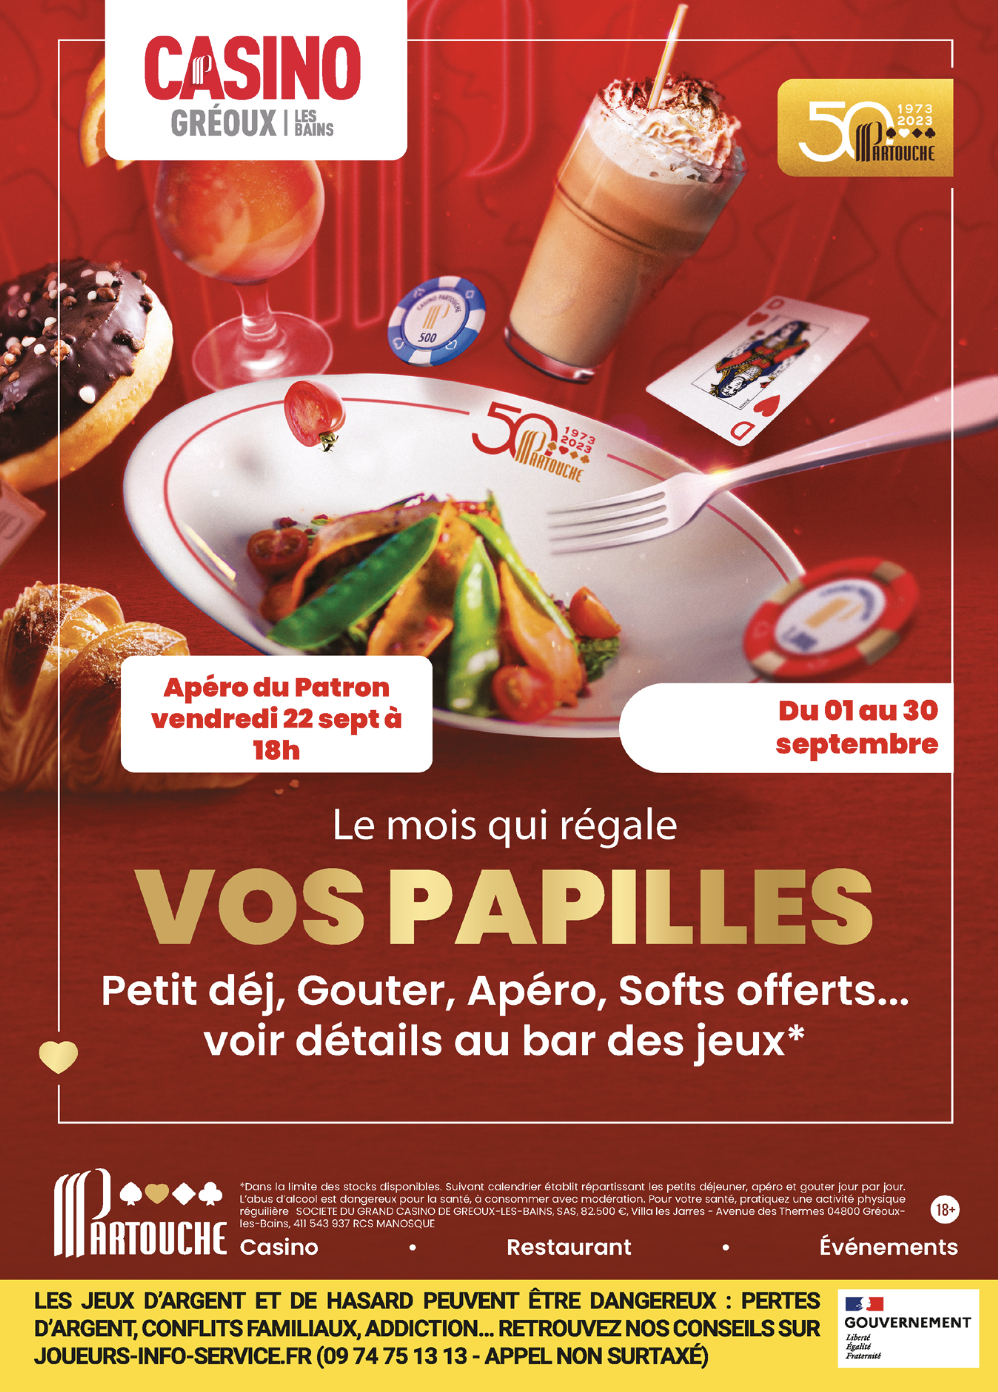 En septembre, on régale  vos papilles au Casino de Gréoux-Les-Bains !